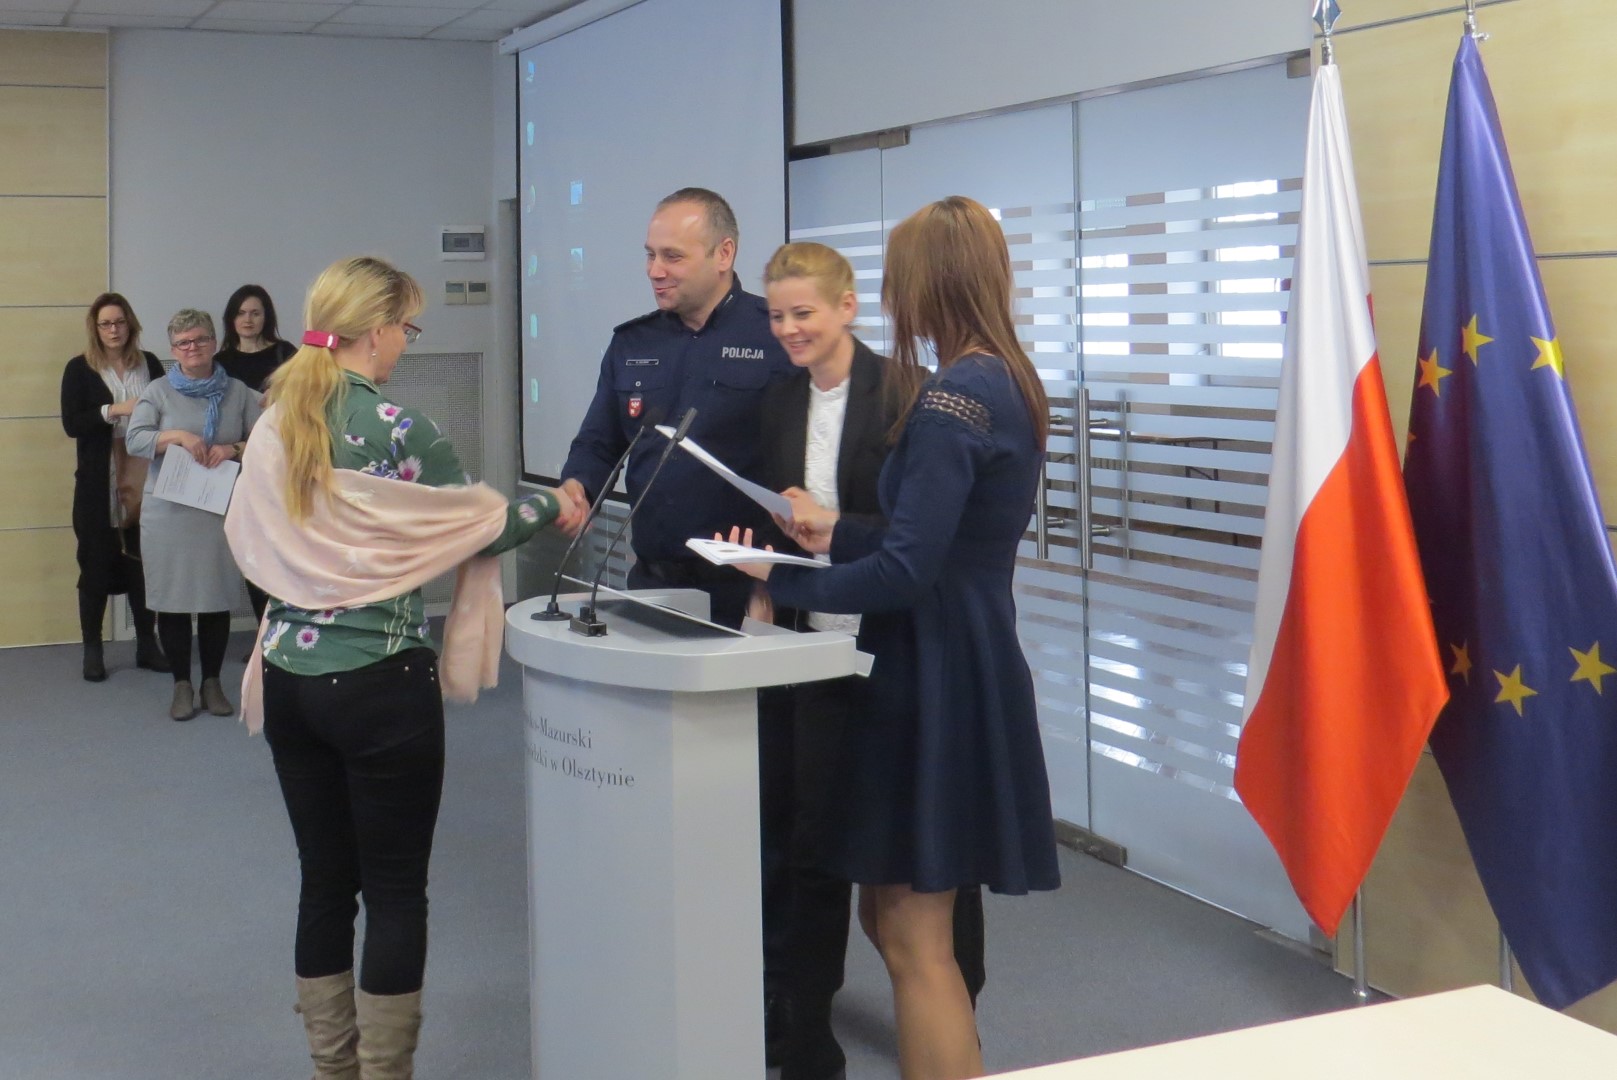 Nauczyciele odbierają certyfikaty w sali Urzędu Wojewódzkiego w Olsztynie